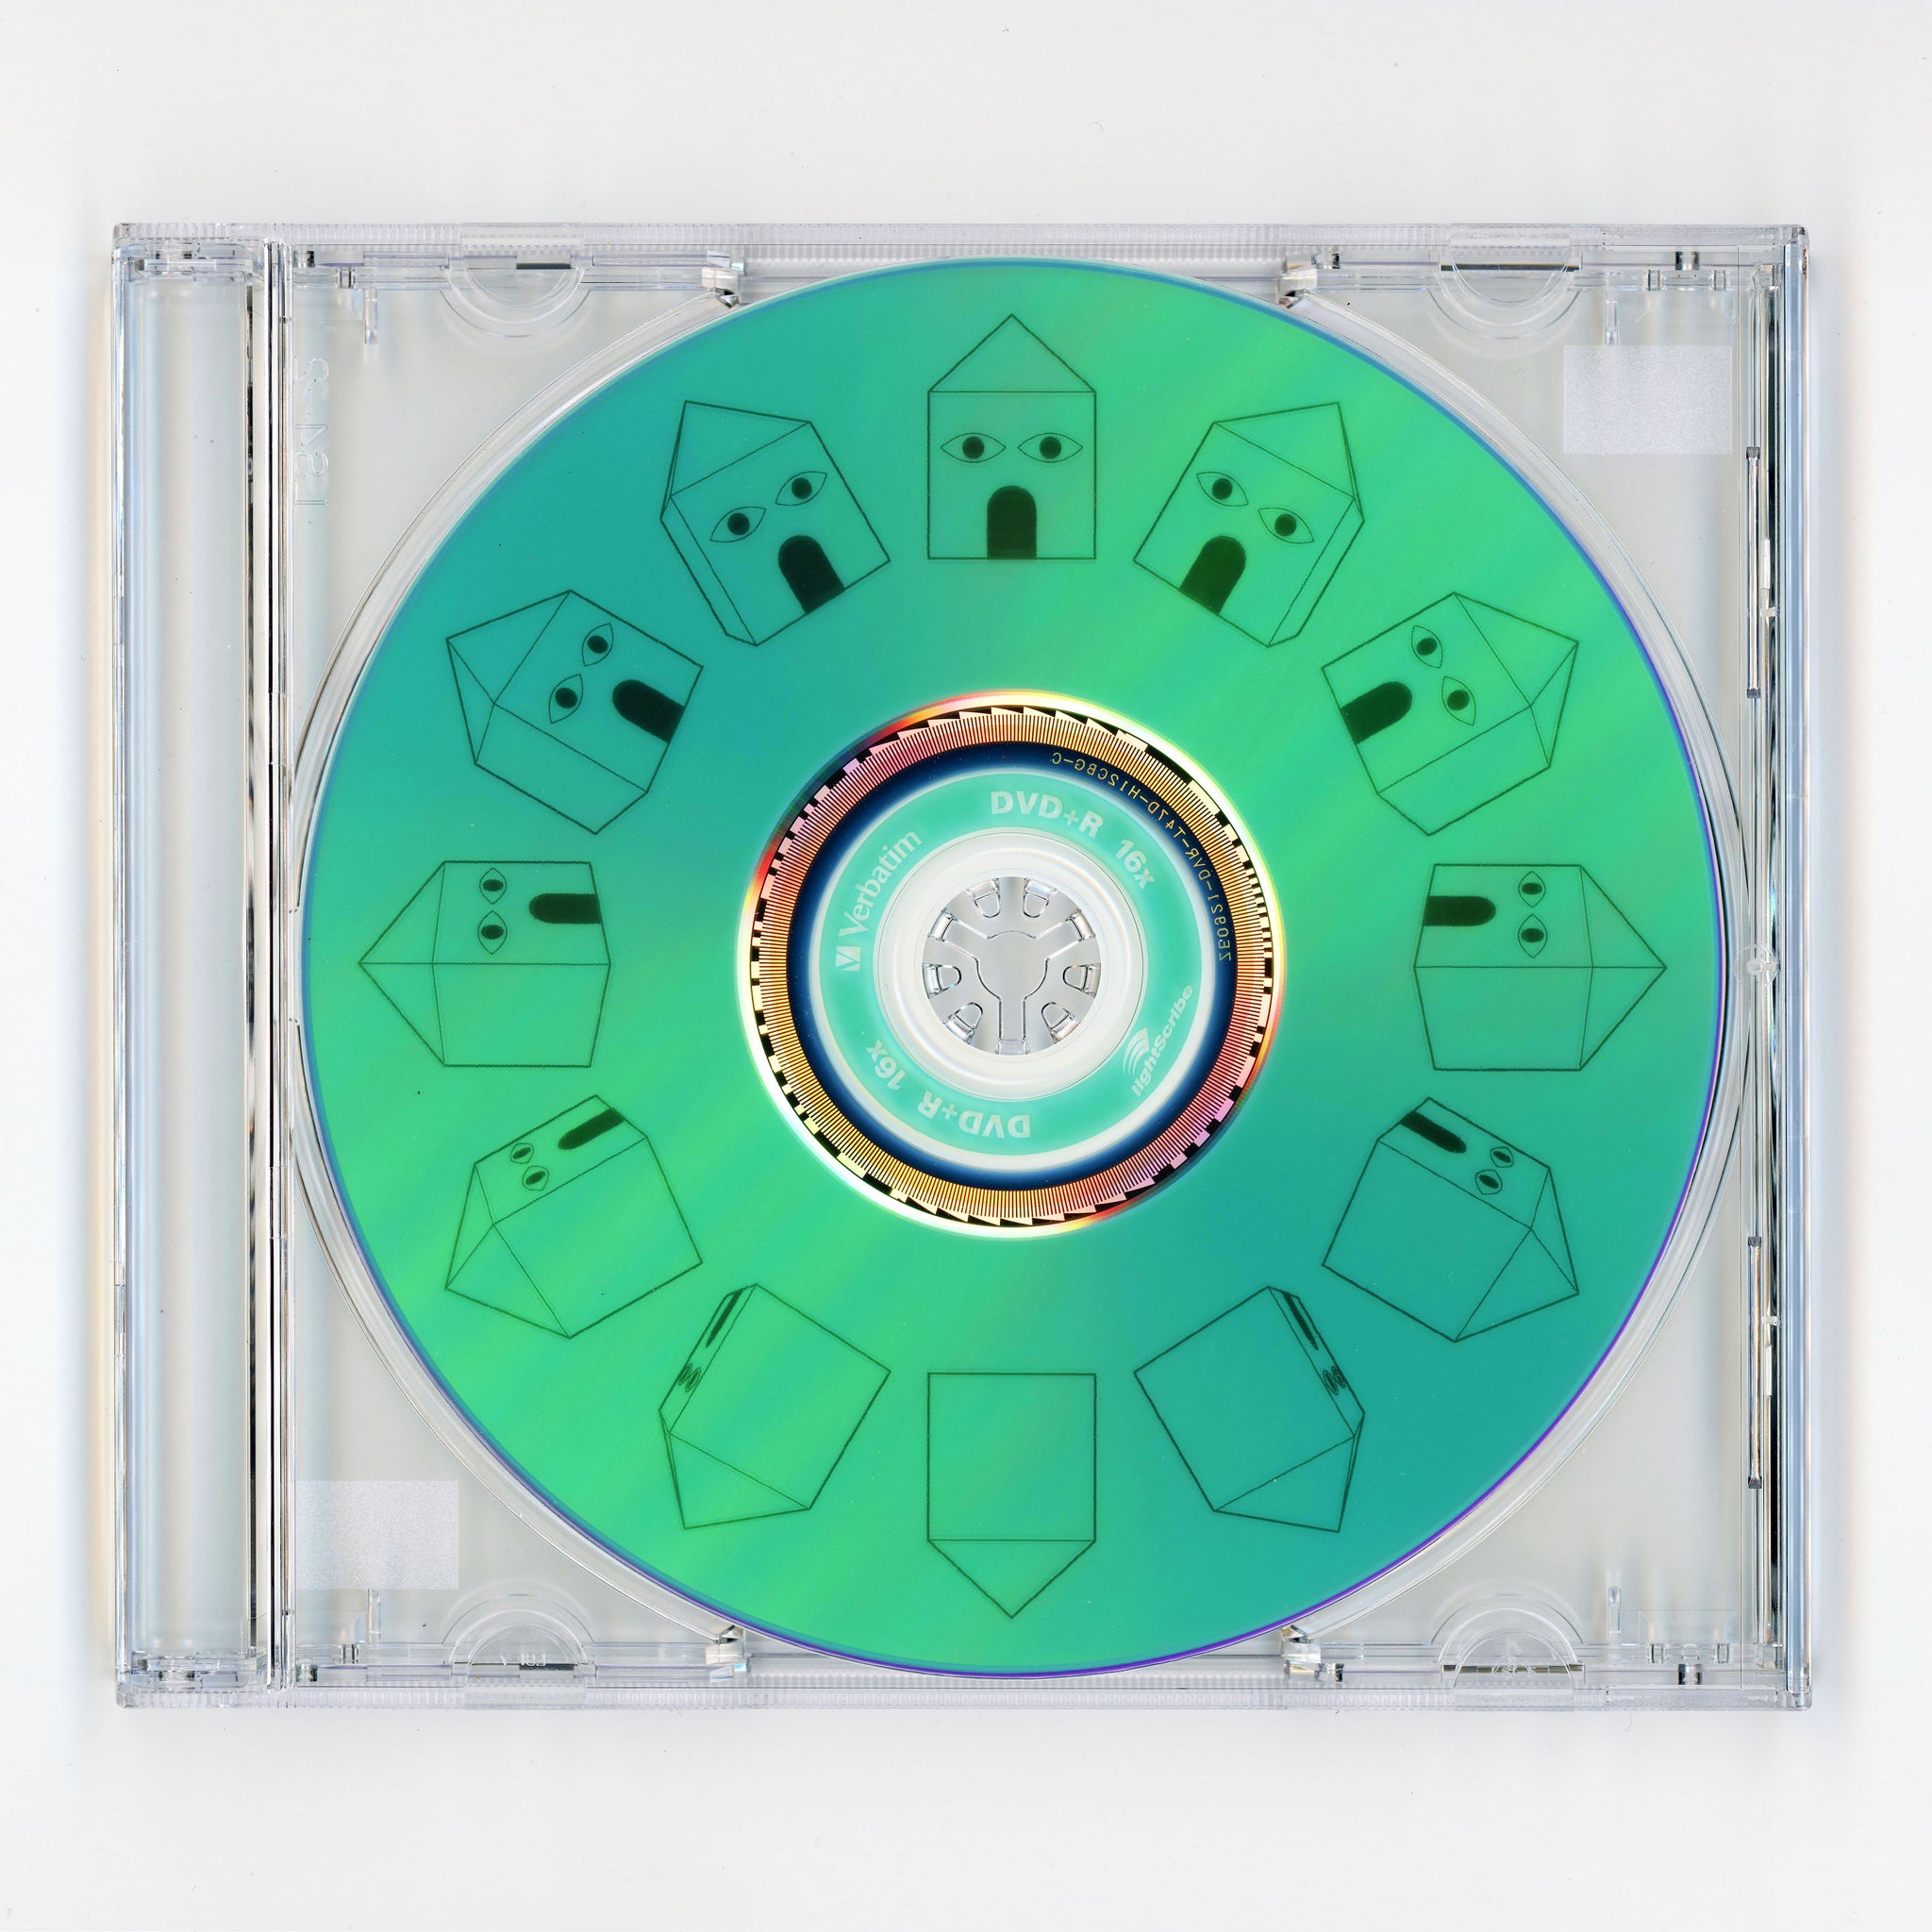 TADASHI, "CD Fantascope"